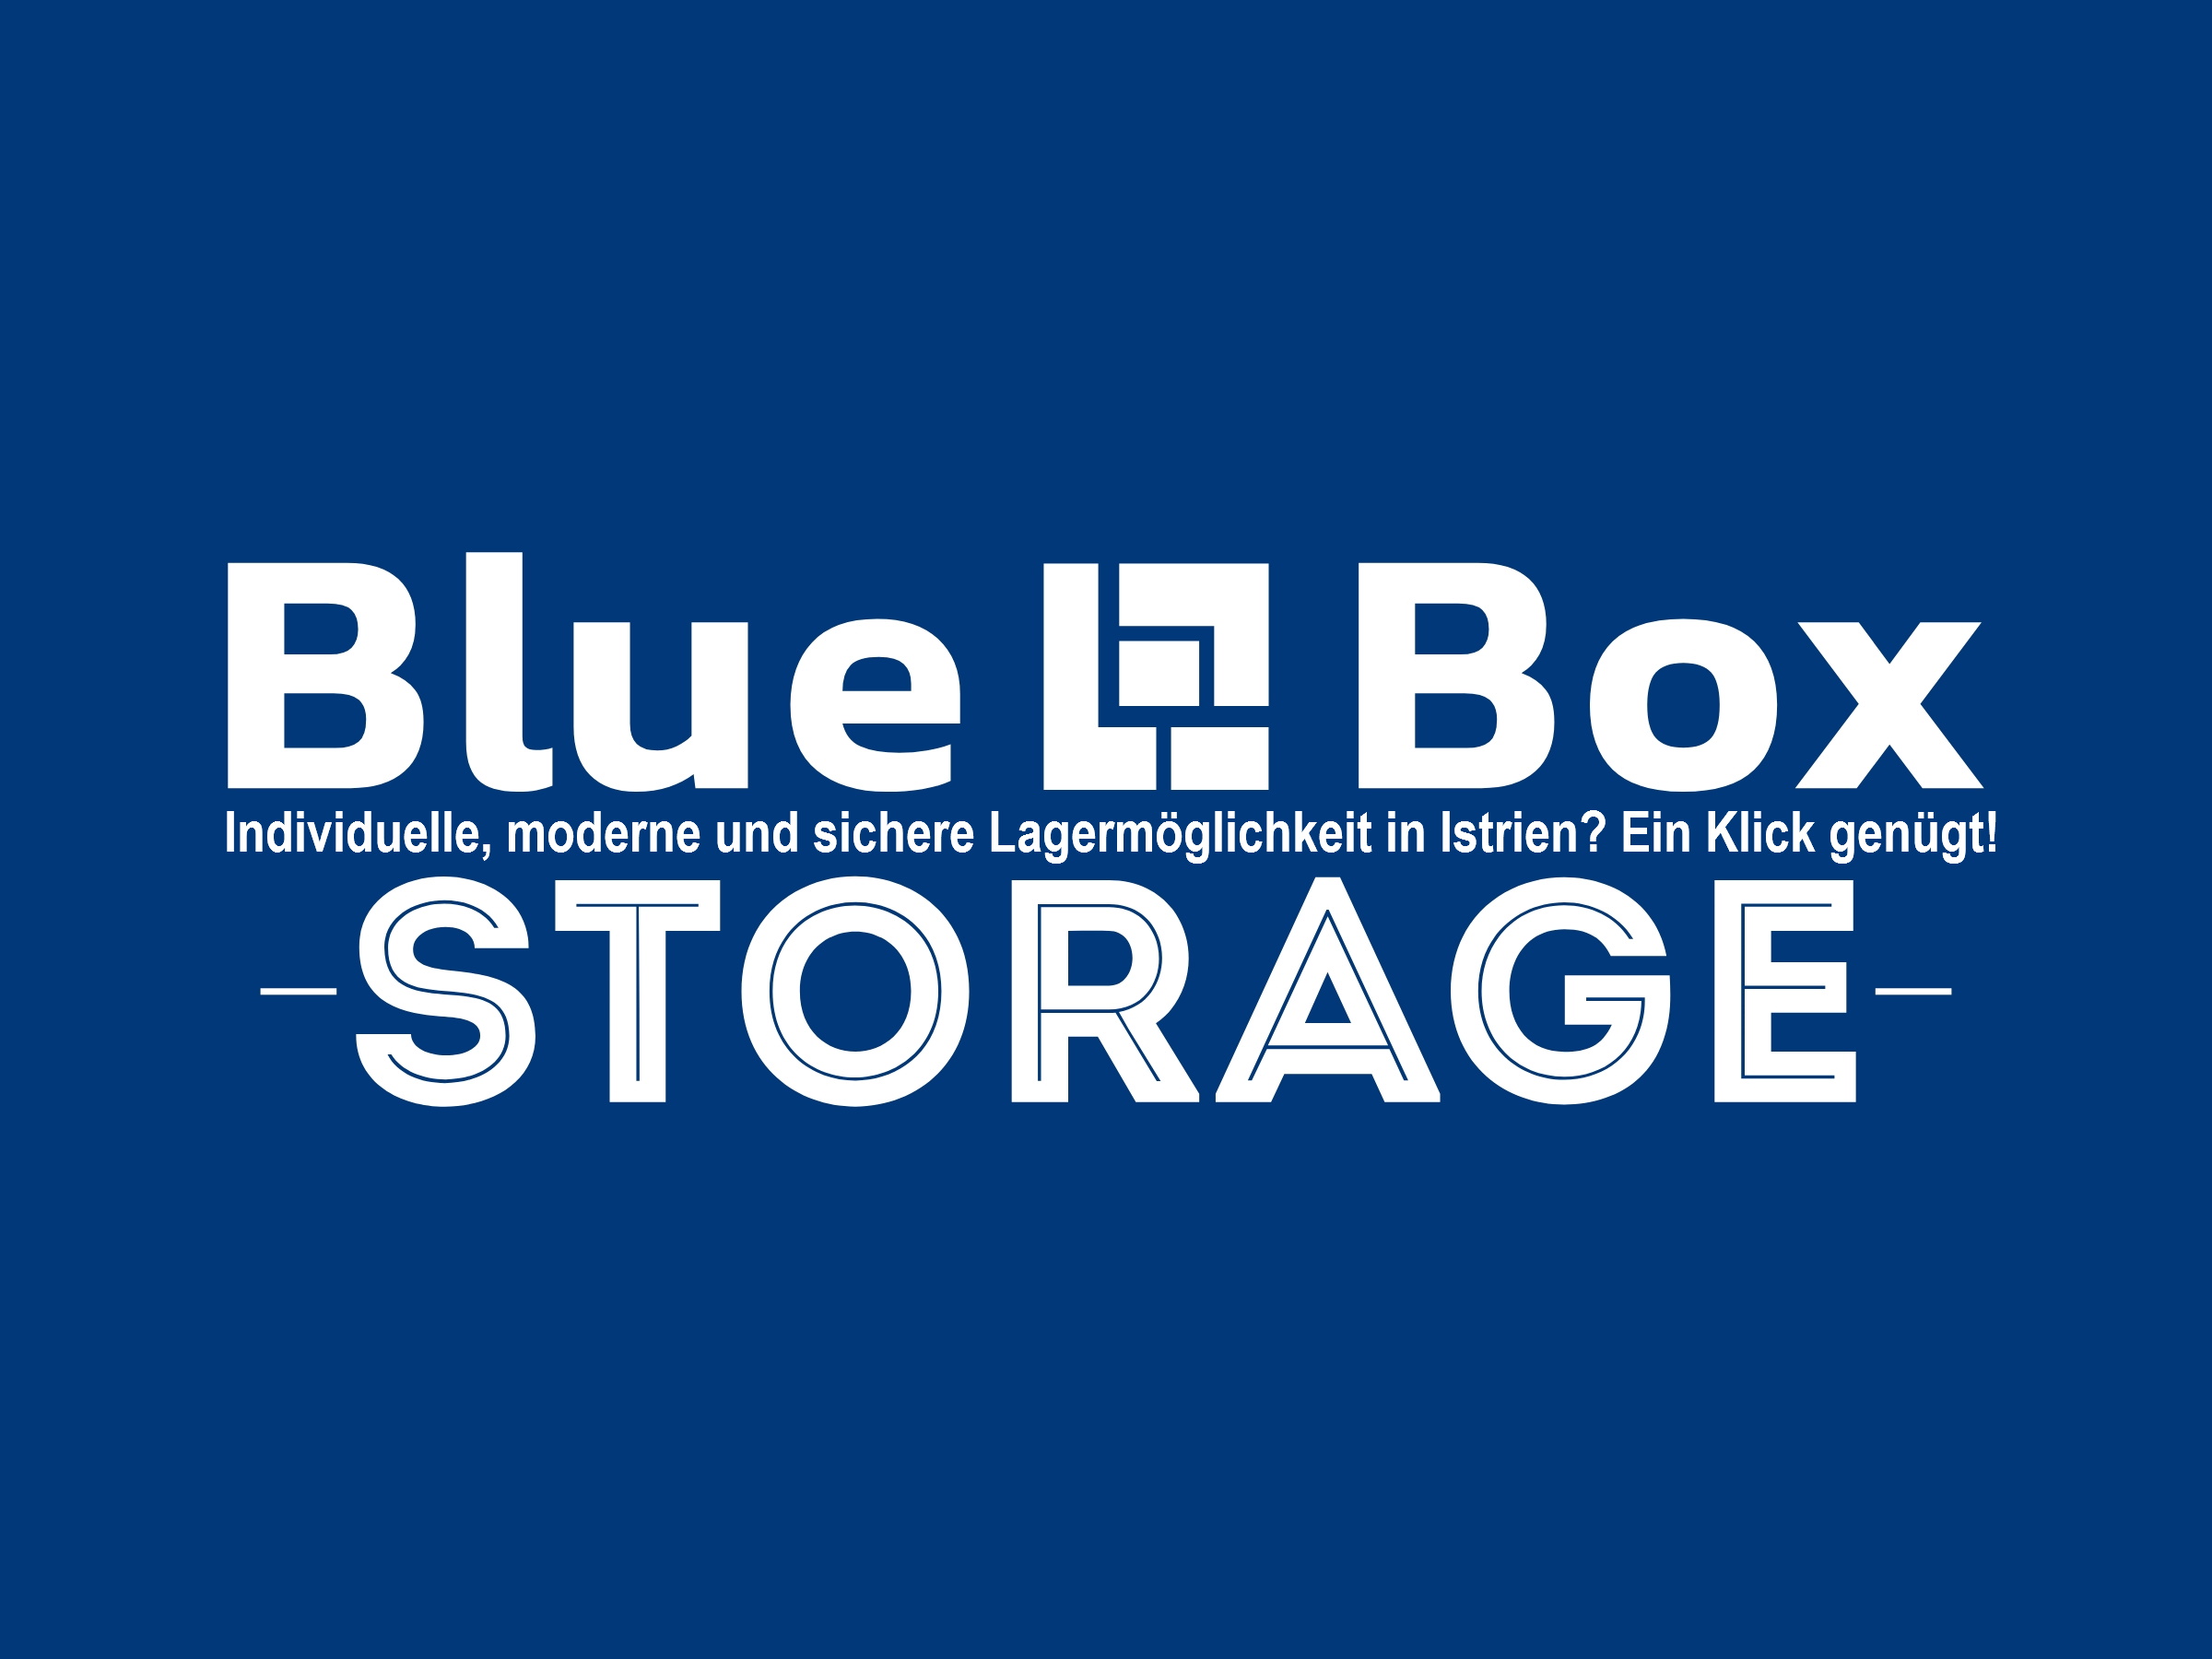 Bluebox Storage Werbebanner